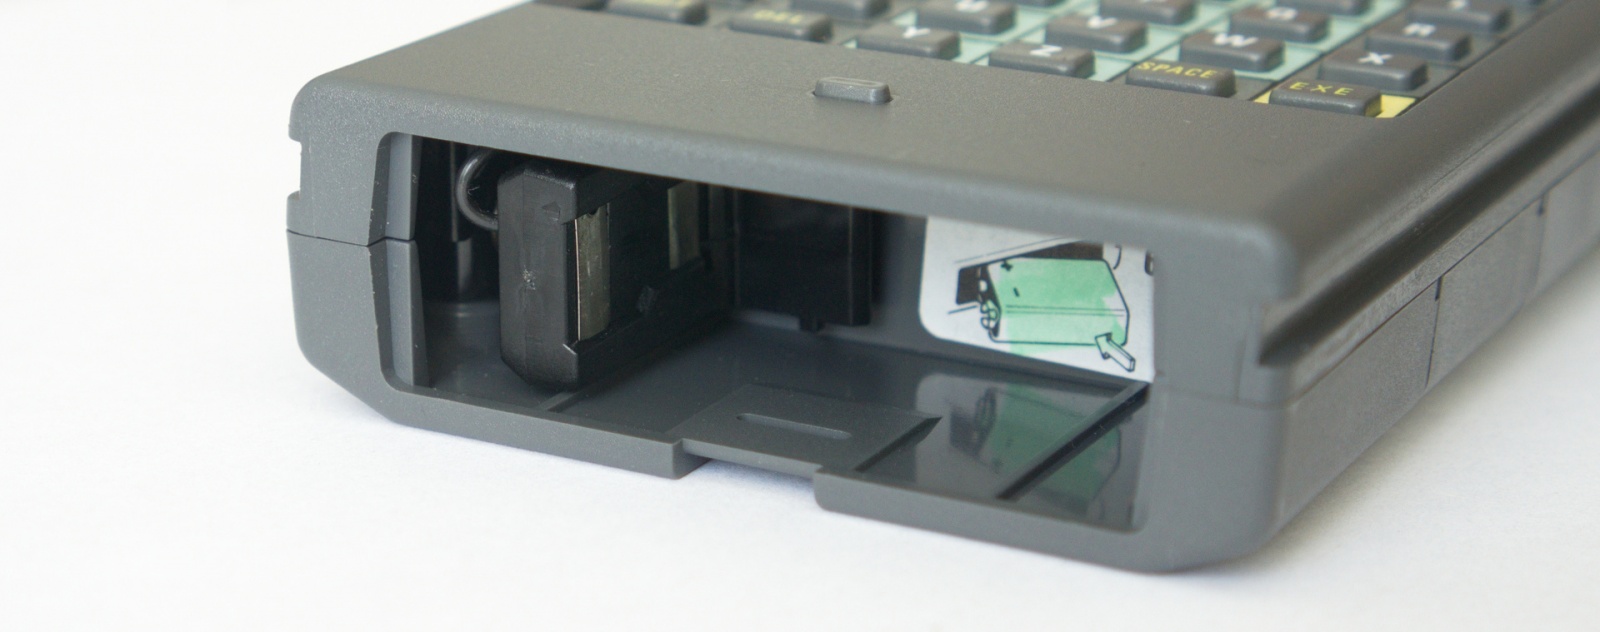 Обзор Psion Organiser II XP с внутренностями и Тетрисом - 11